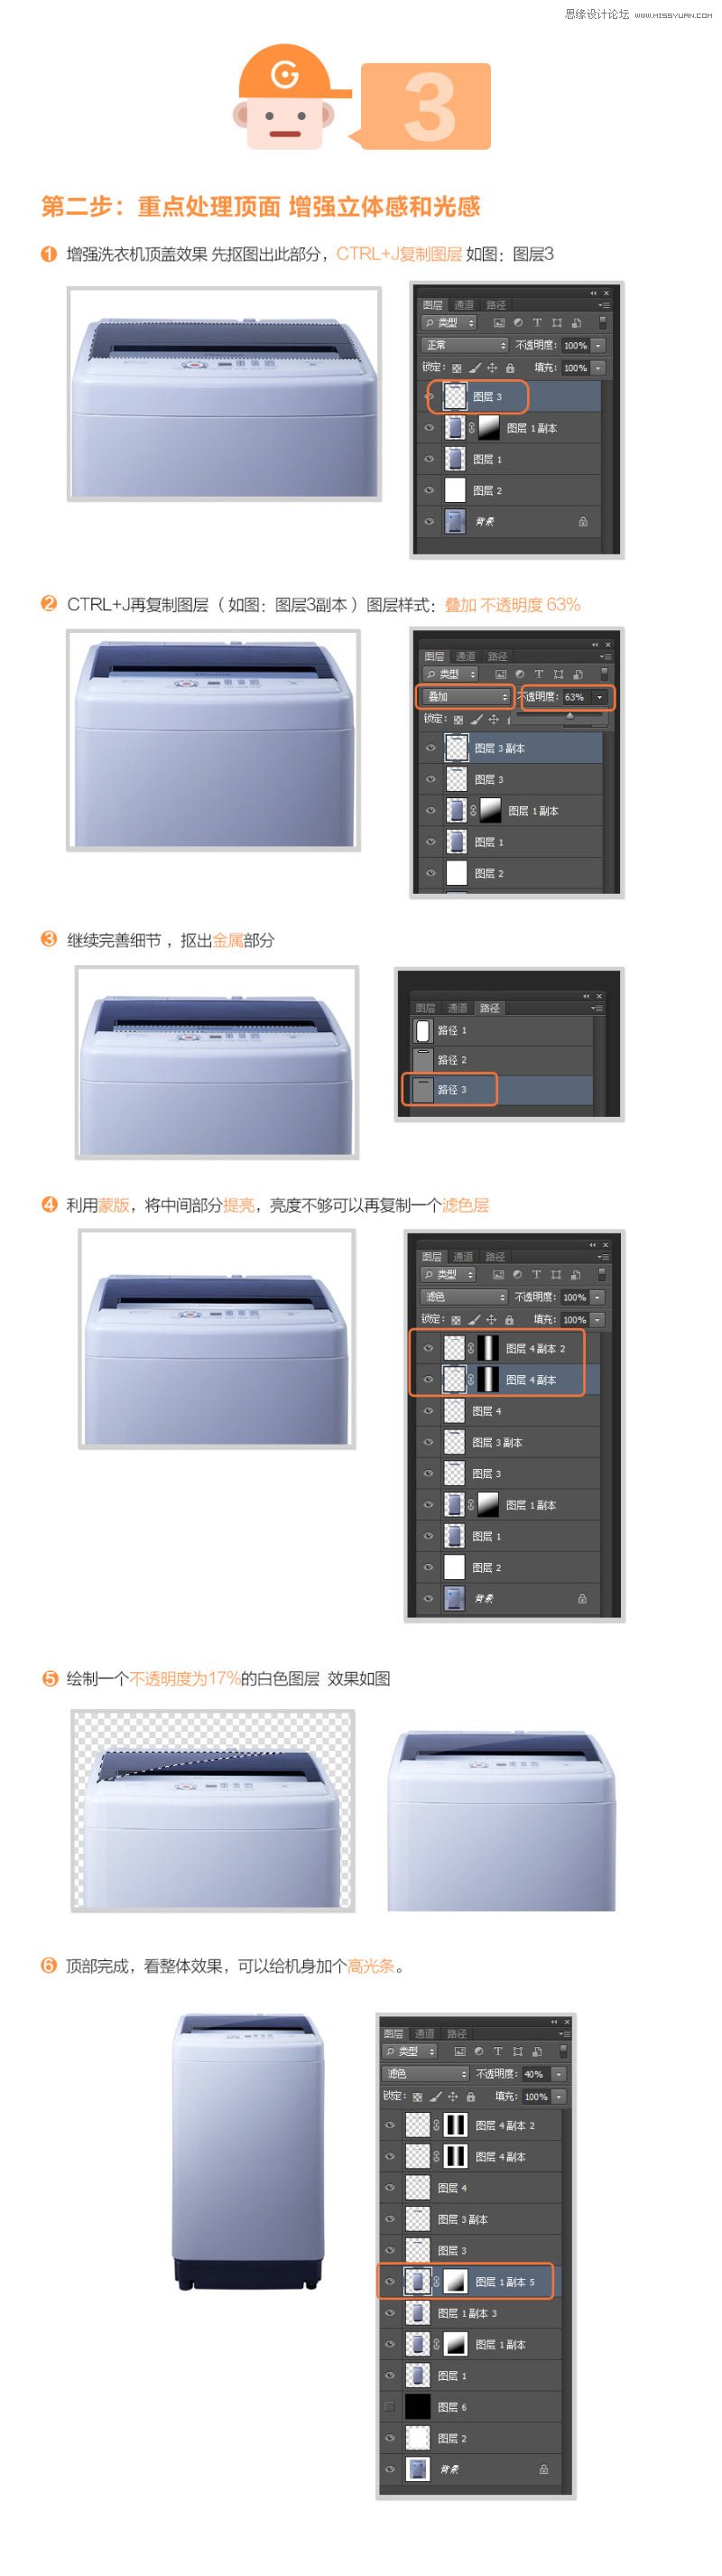 Photoshop解析洗衣机产品的后期修图过程,PS教程,素材中国